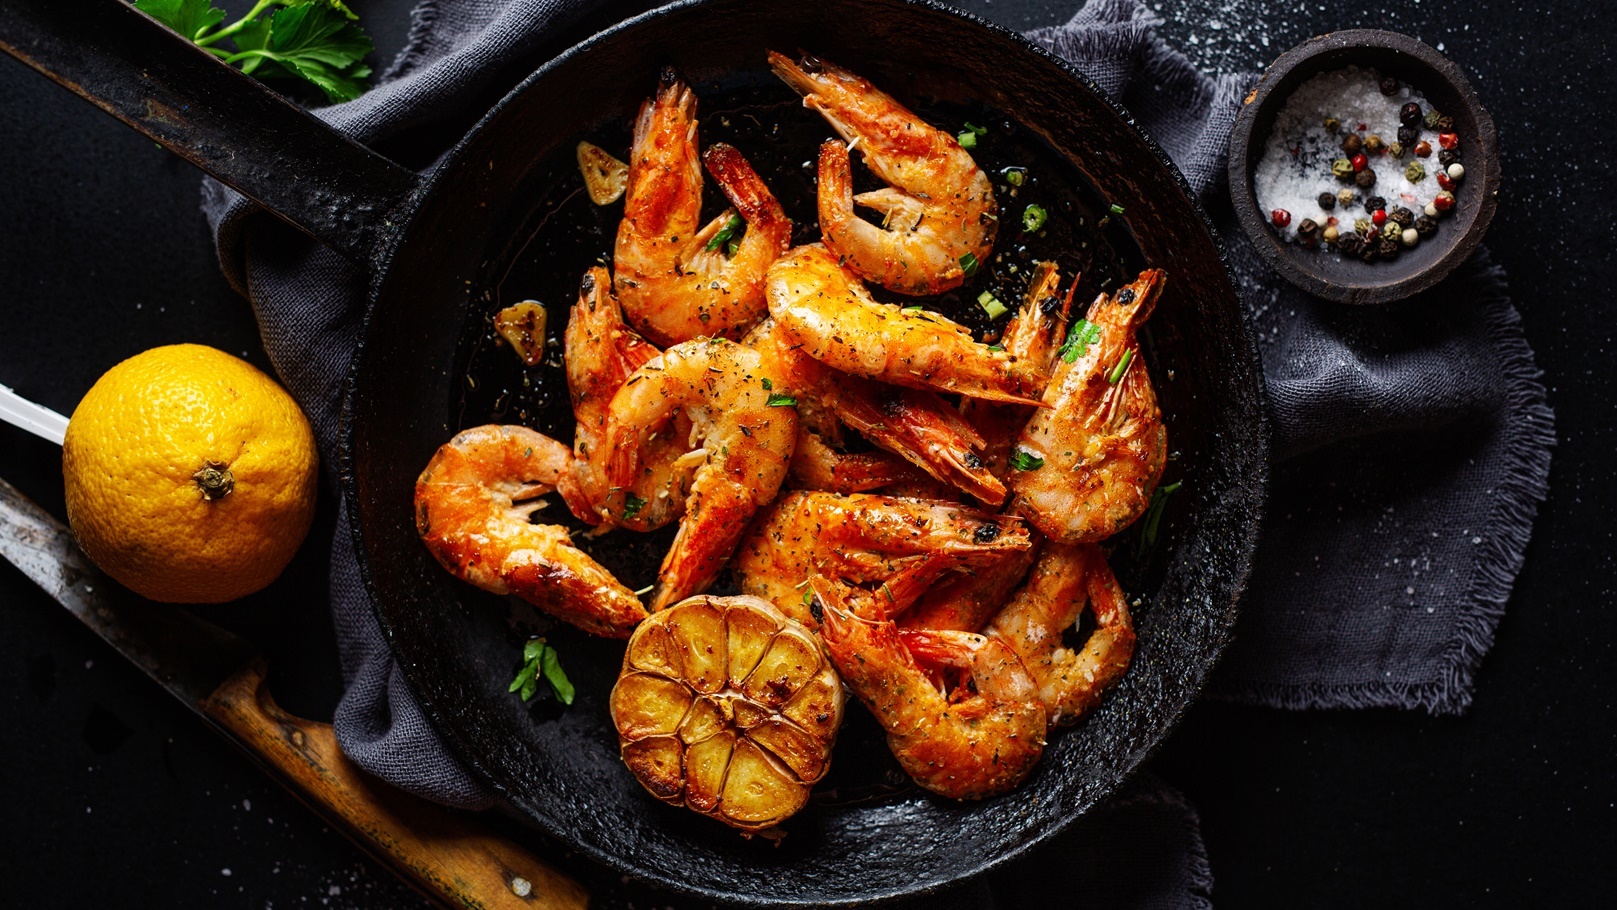 roasted-shrimps-on-pan-2021-08-27-09-44-45-utc